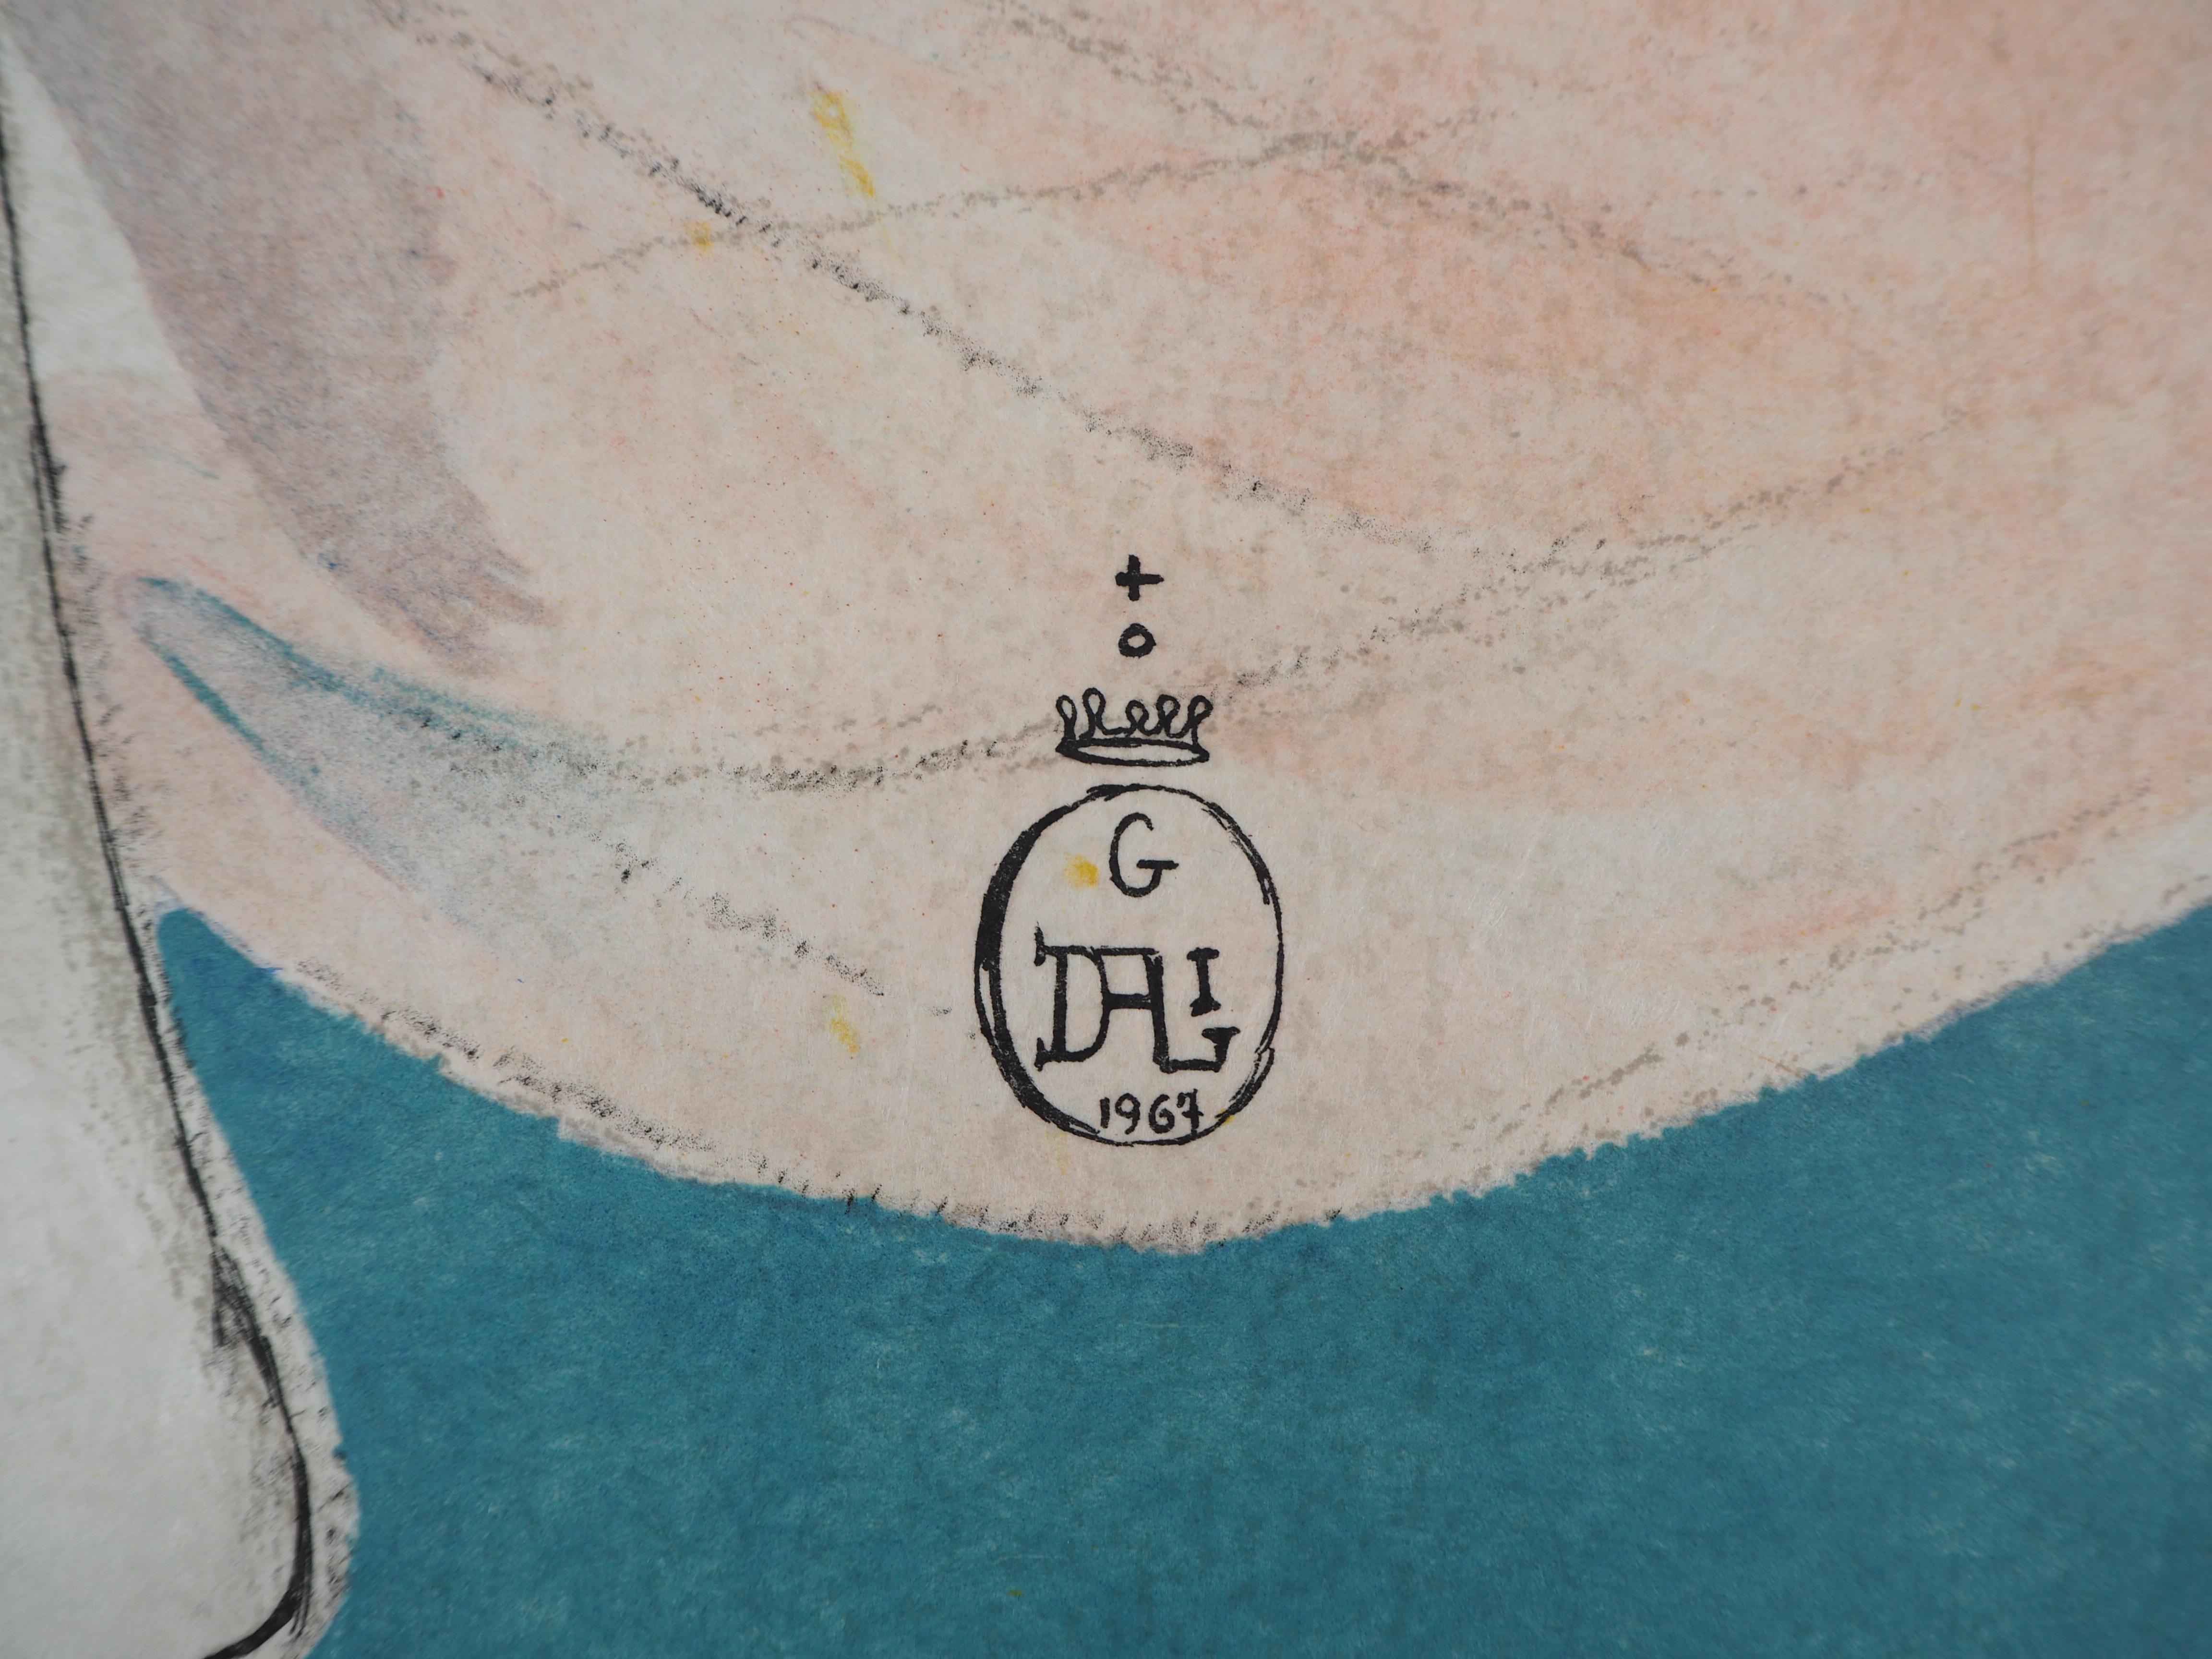 Salvador DALI
Allegorie, Cecils Keuschheit

Steinlithographie in Farbe
Handsigniert mit Bleistift
Eines der 26 Exemplare auf Japanpapier nummeriert /Z
Auf Japanpapier 65 x 50 cm (25 5/8  x 19 5/8 Zoll)

REFERENZEN : 
- Katalog raisonne Feld #69-1